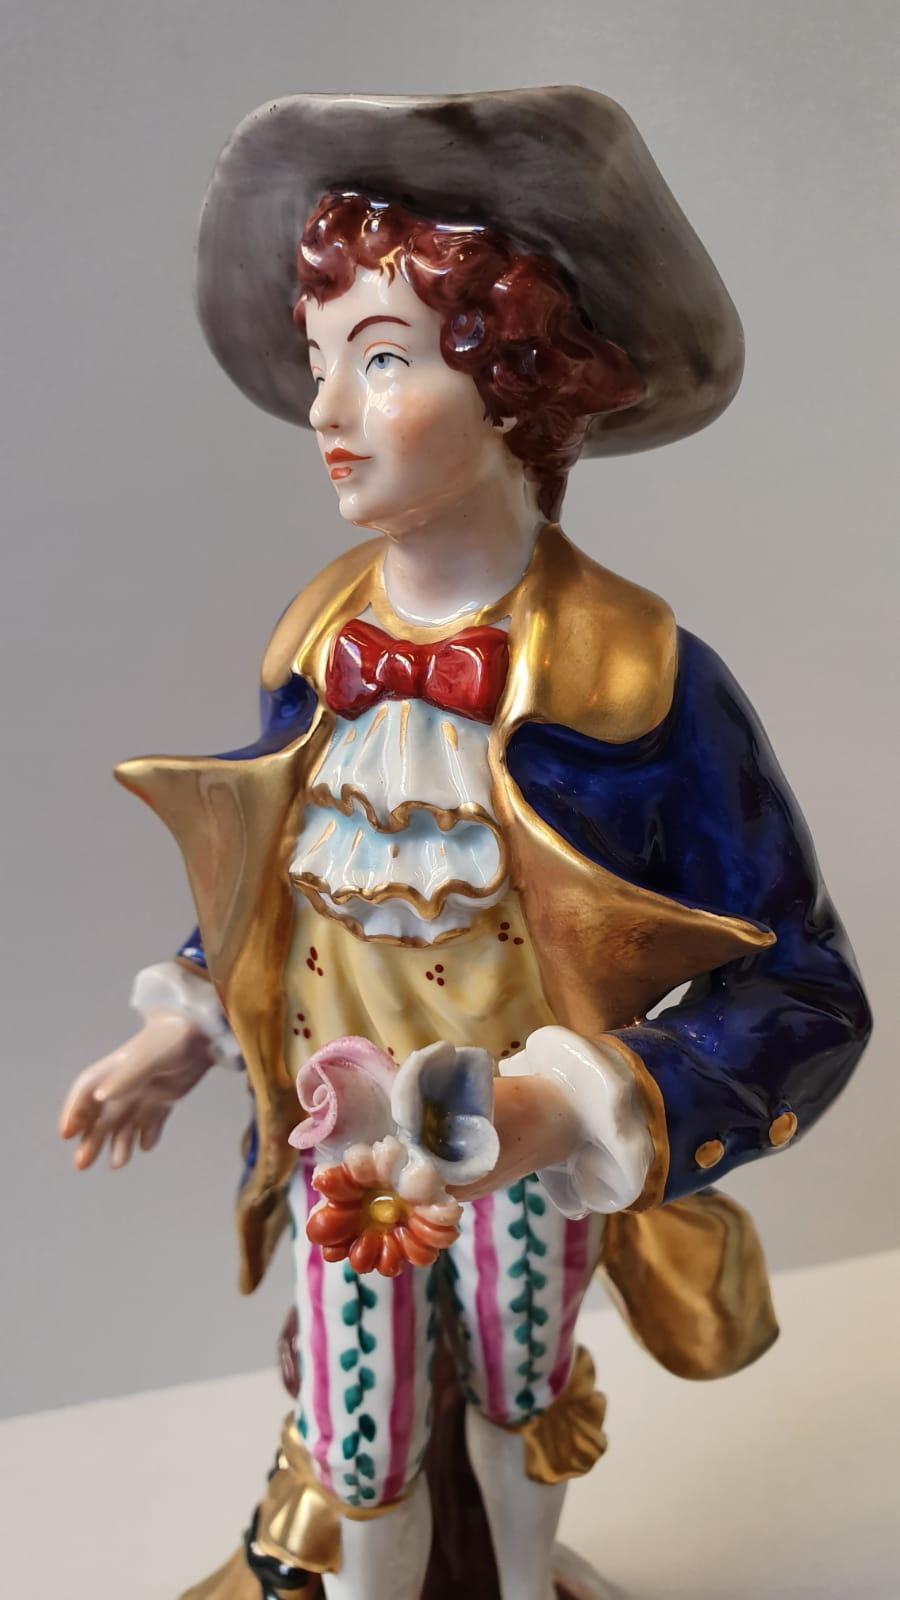 18th Century Style Capo Di Monte Porcelain Figure 